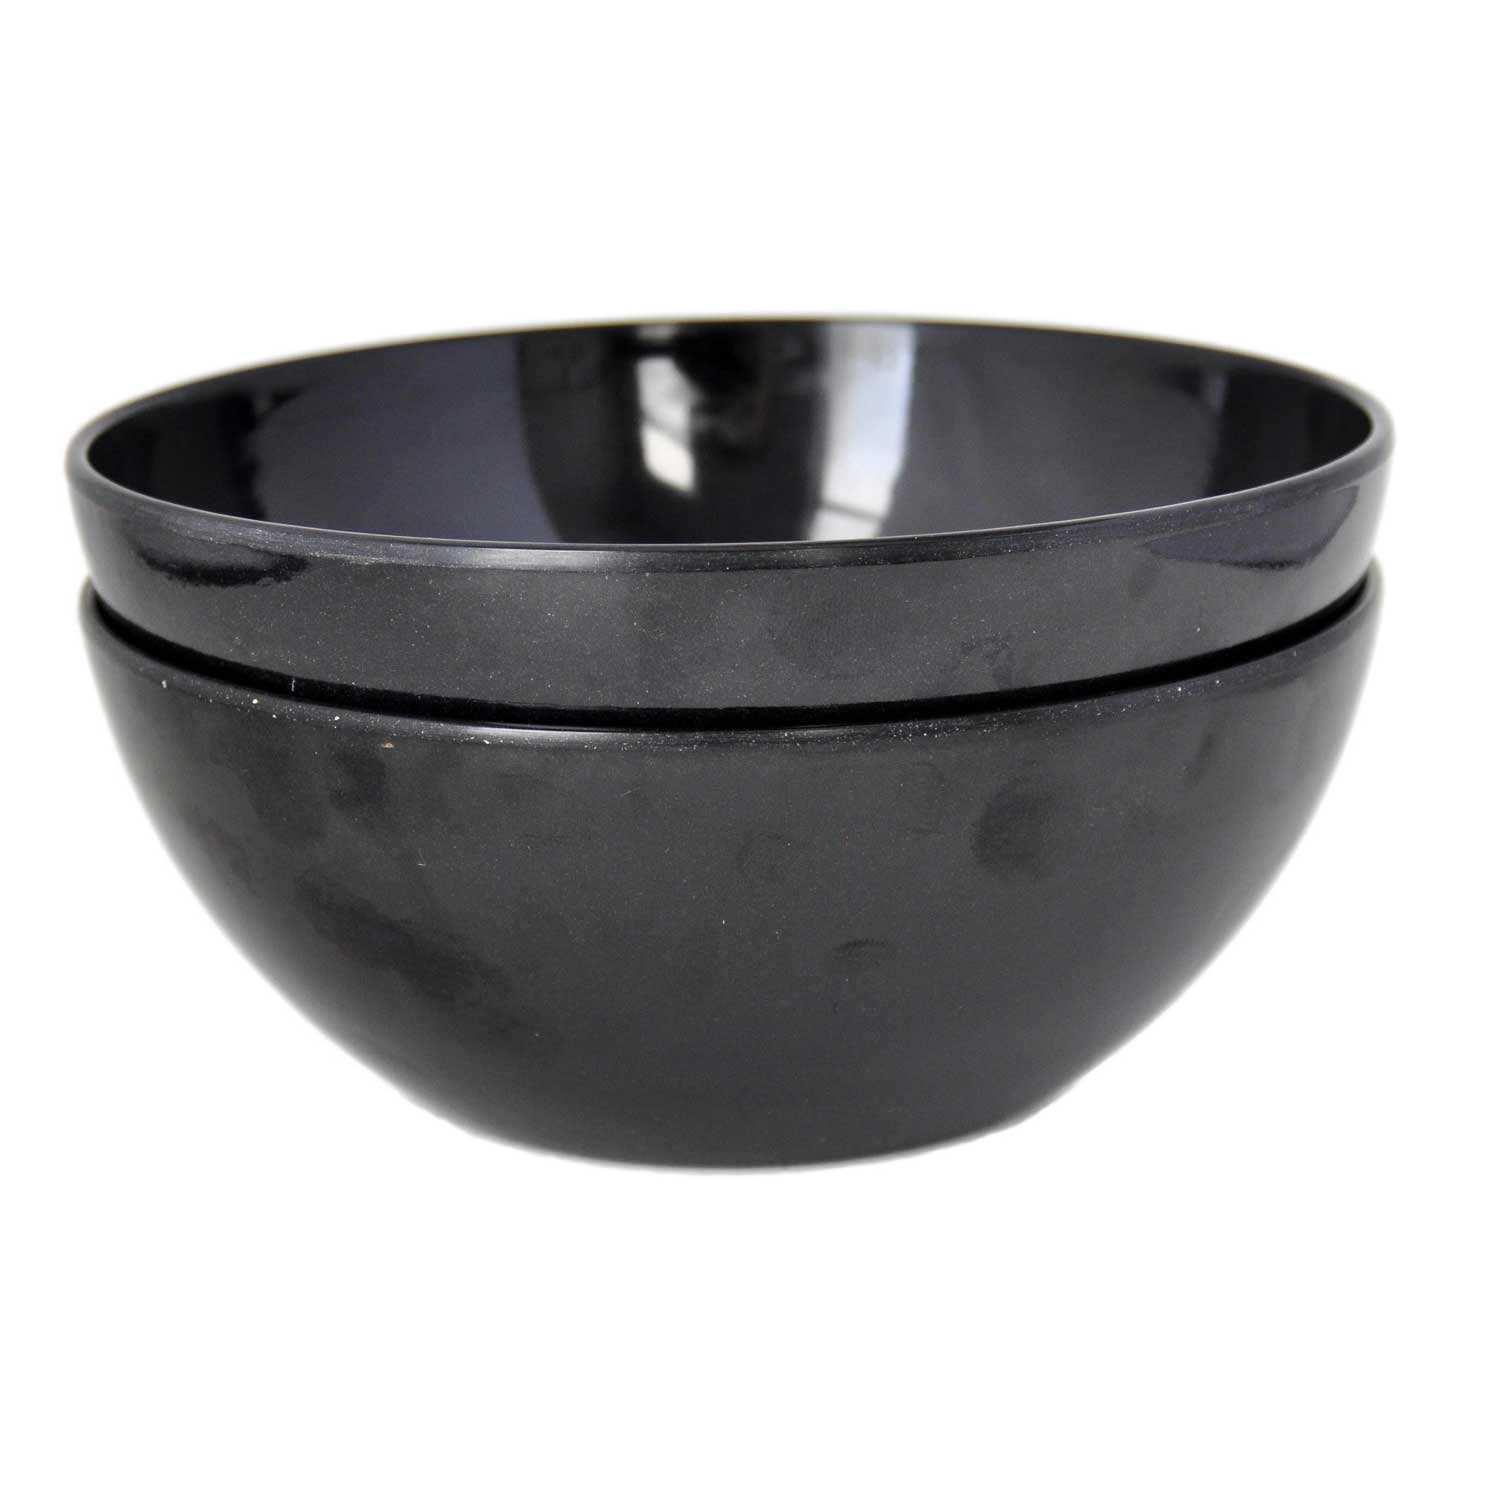 yumi-504-nature-black-natural-bamboo-salad-pasta-and-soup-bowls-set-of-2.jpg